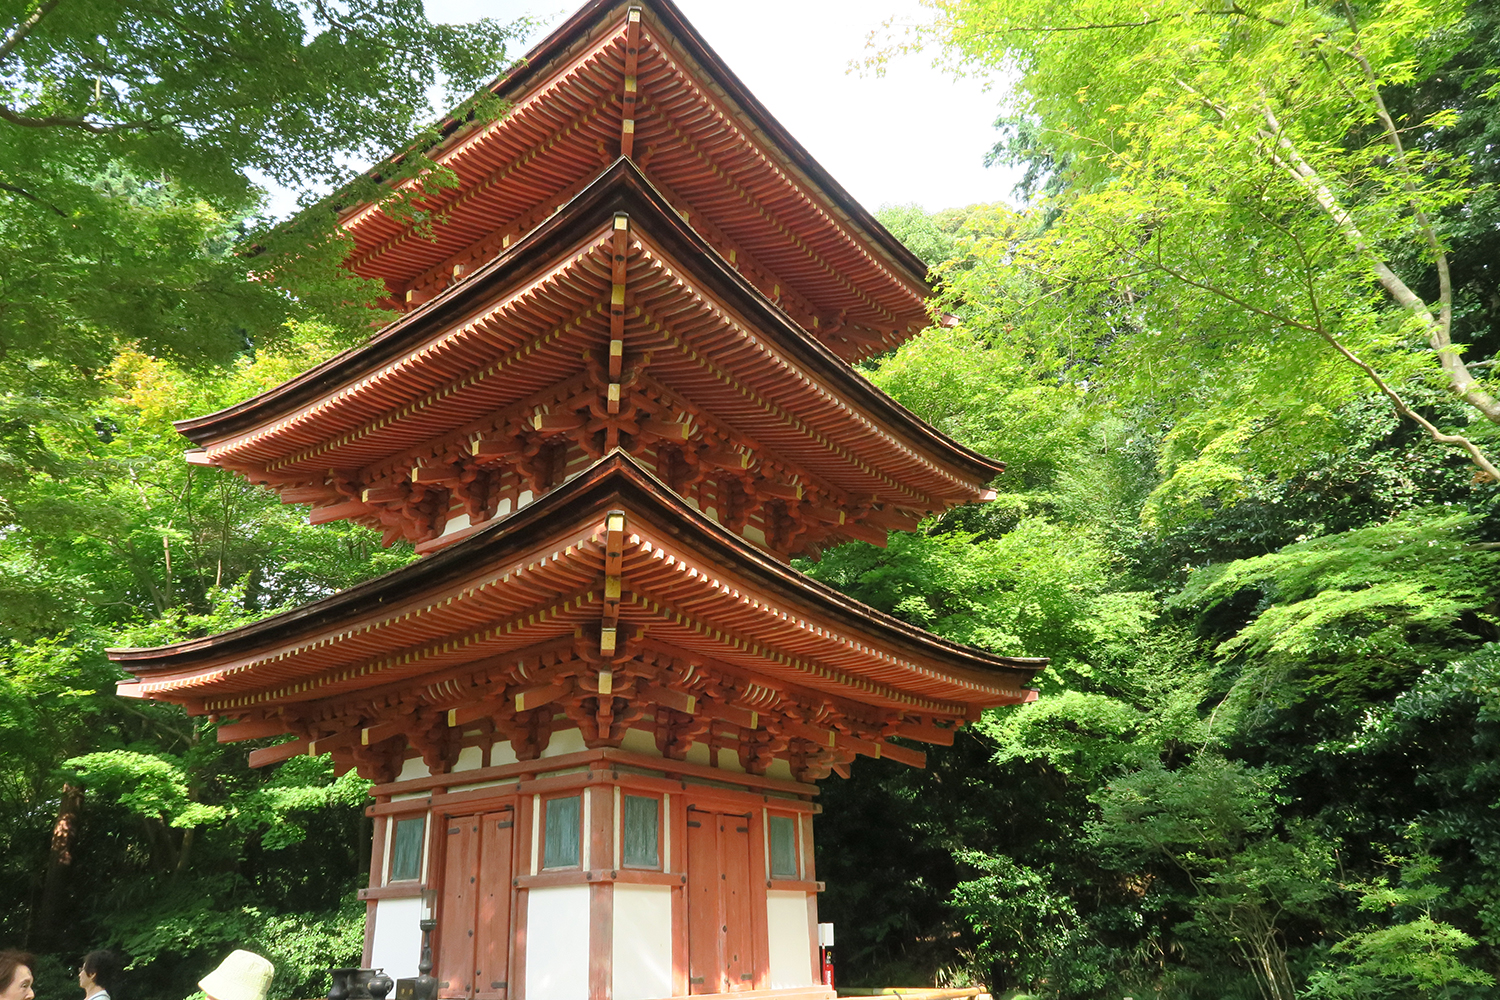 高さ16mの三重塔。京都一条大宮にあった寺院の塔を解体移設したそうですが、寺院名も不明とのこと。